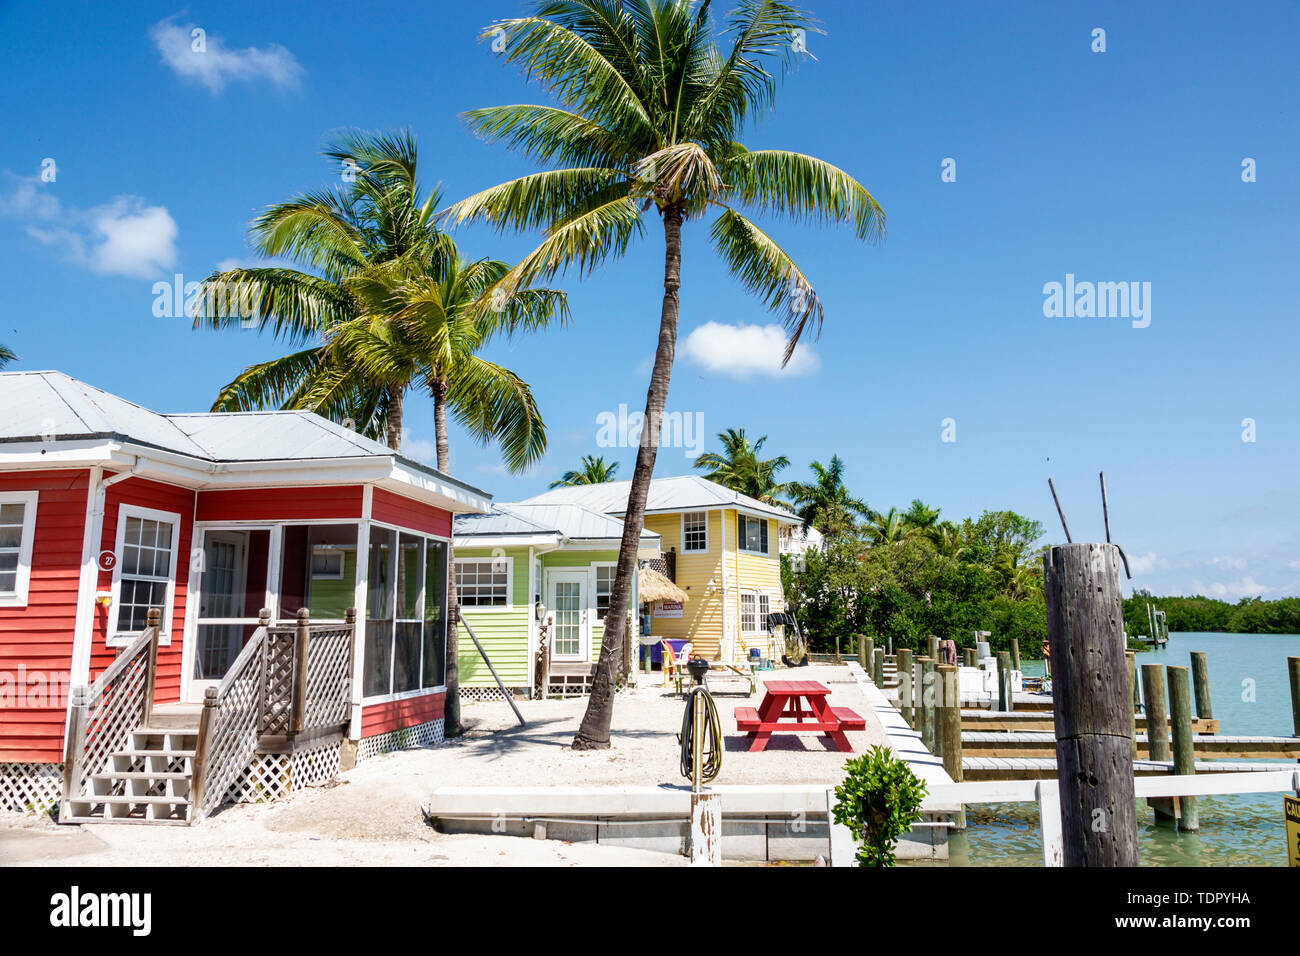 Sanibel Island Florida, Castaways Beach & Bay Cottages, Resort, Hotel, farbenfroher Cottage Bungalow mit Holzrahmen, Palmen, Docks, am Wasser, FL190508007 Stockfoto